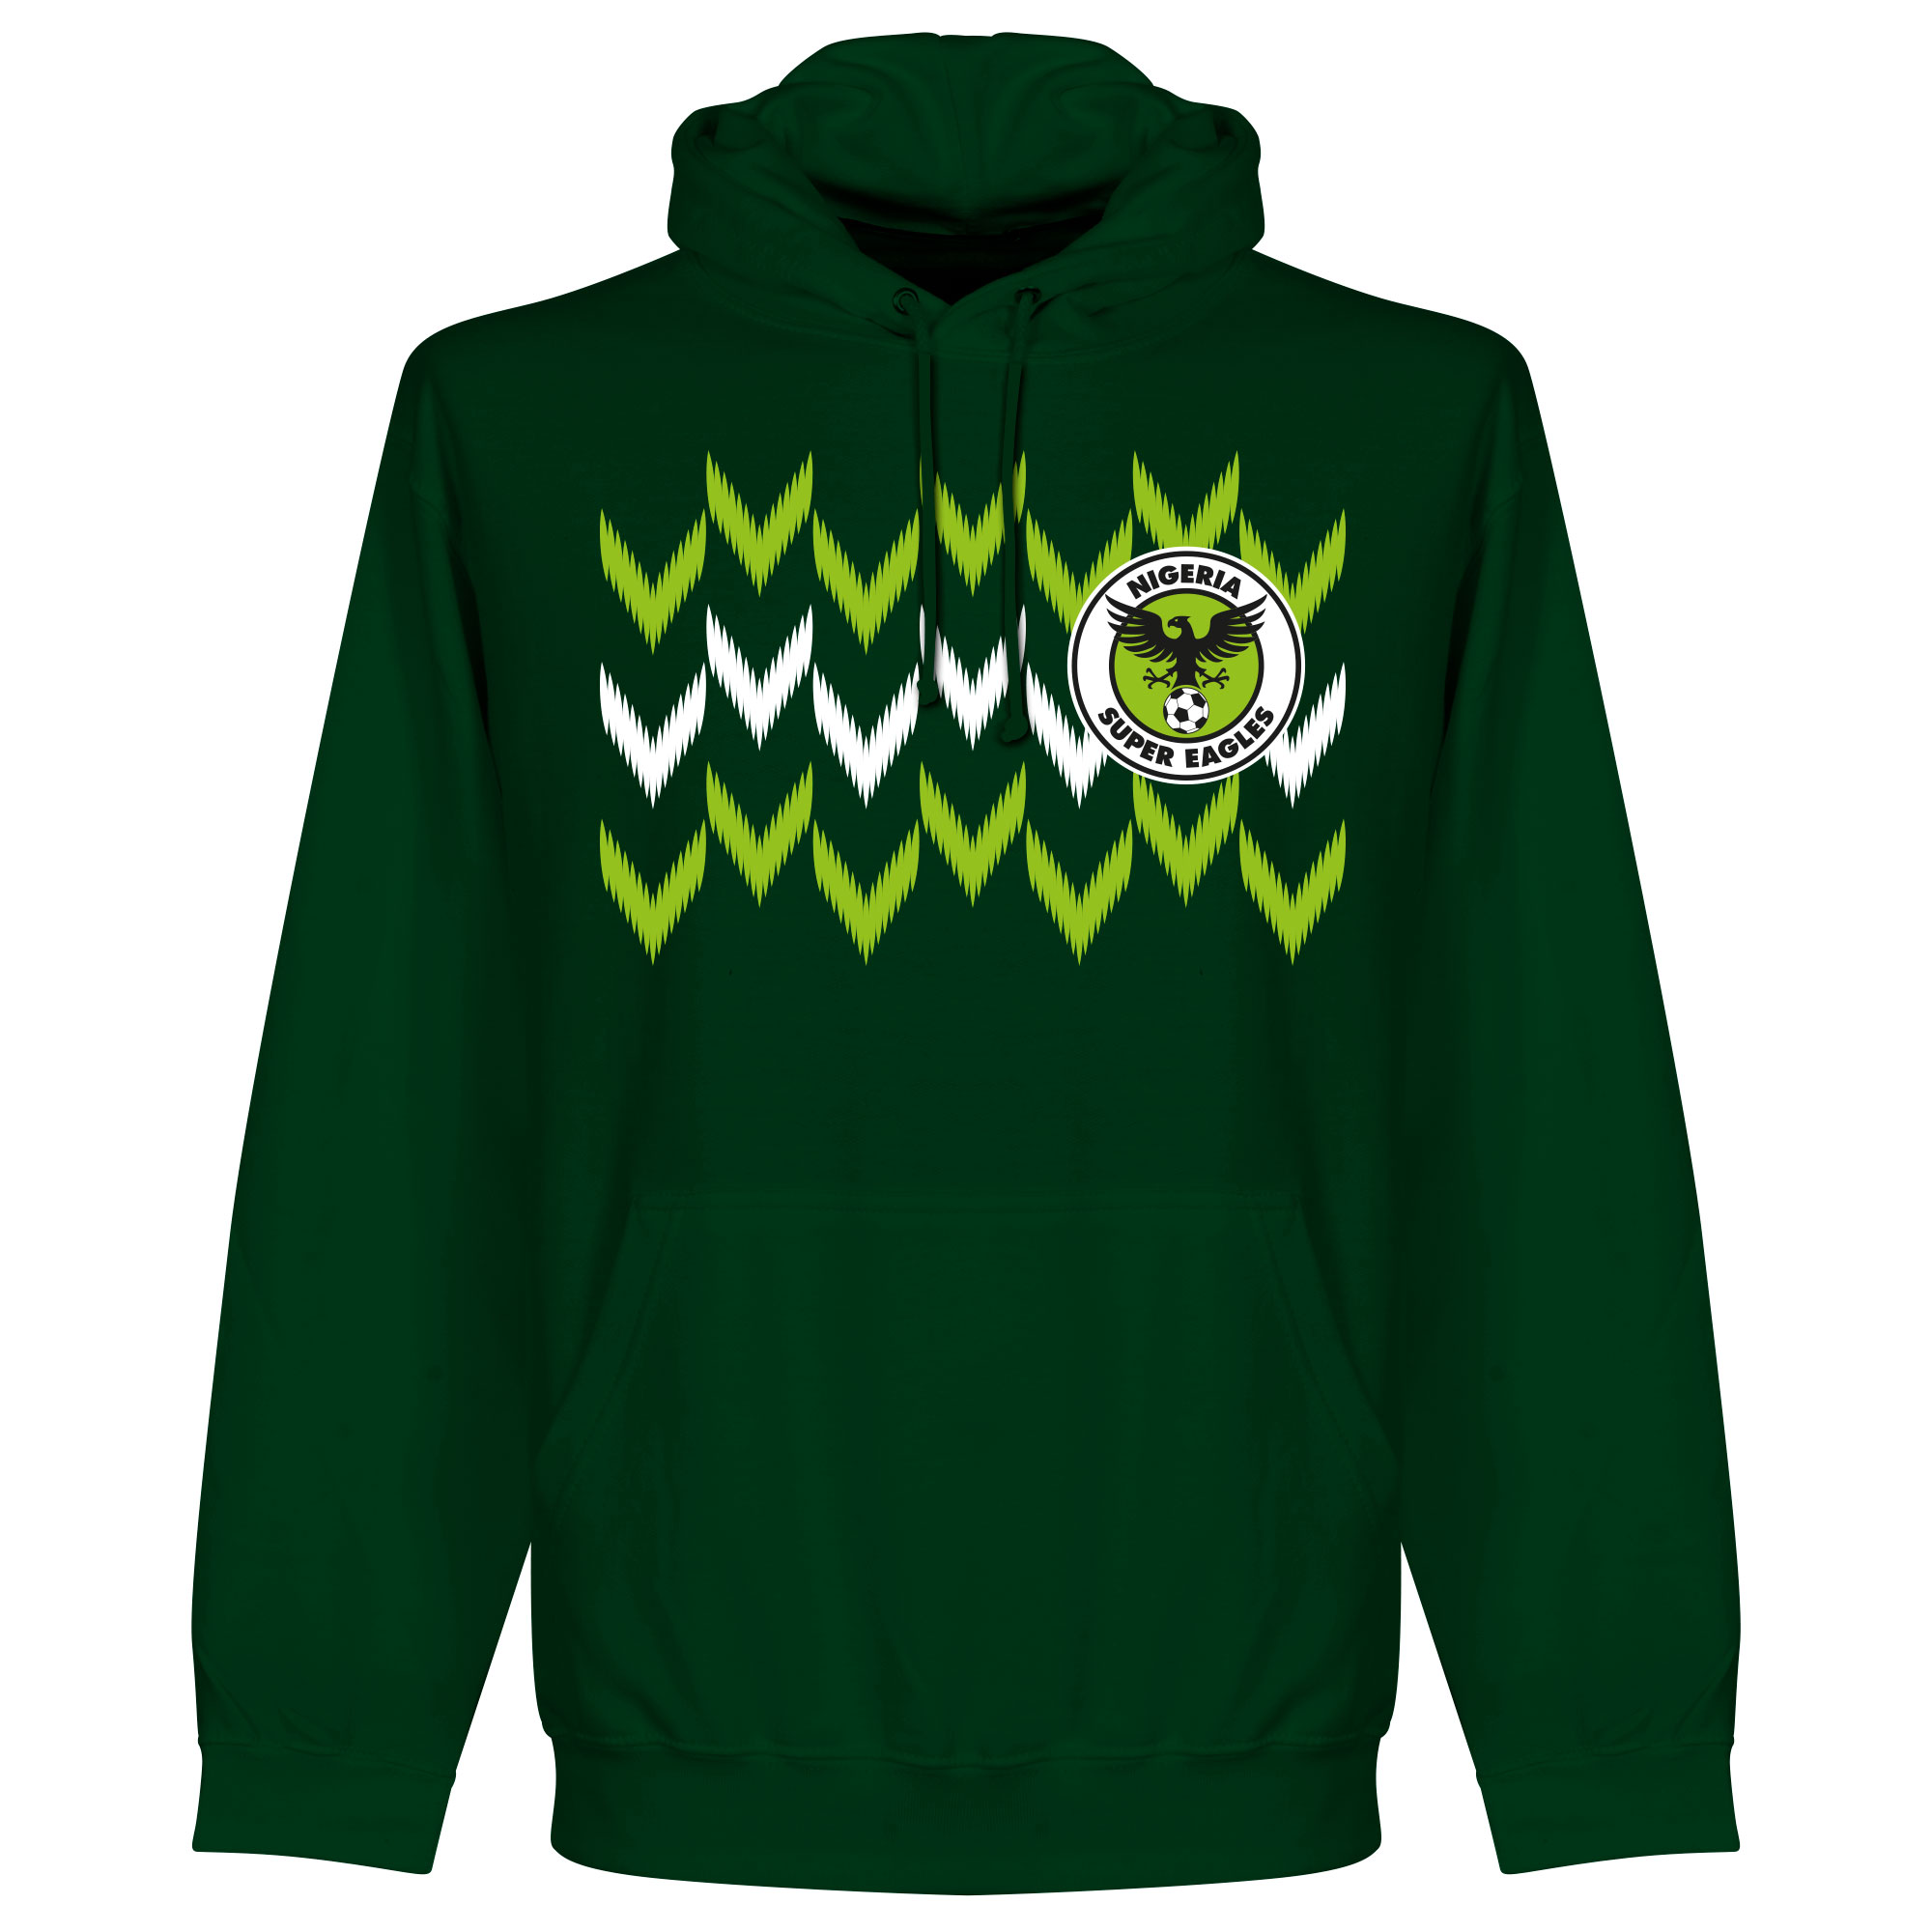 Nigeria 2018 Pattern Hooded Sweater - Donker Groen - XXL